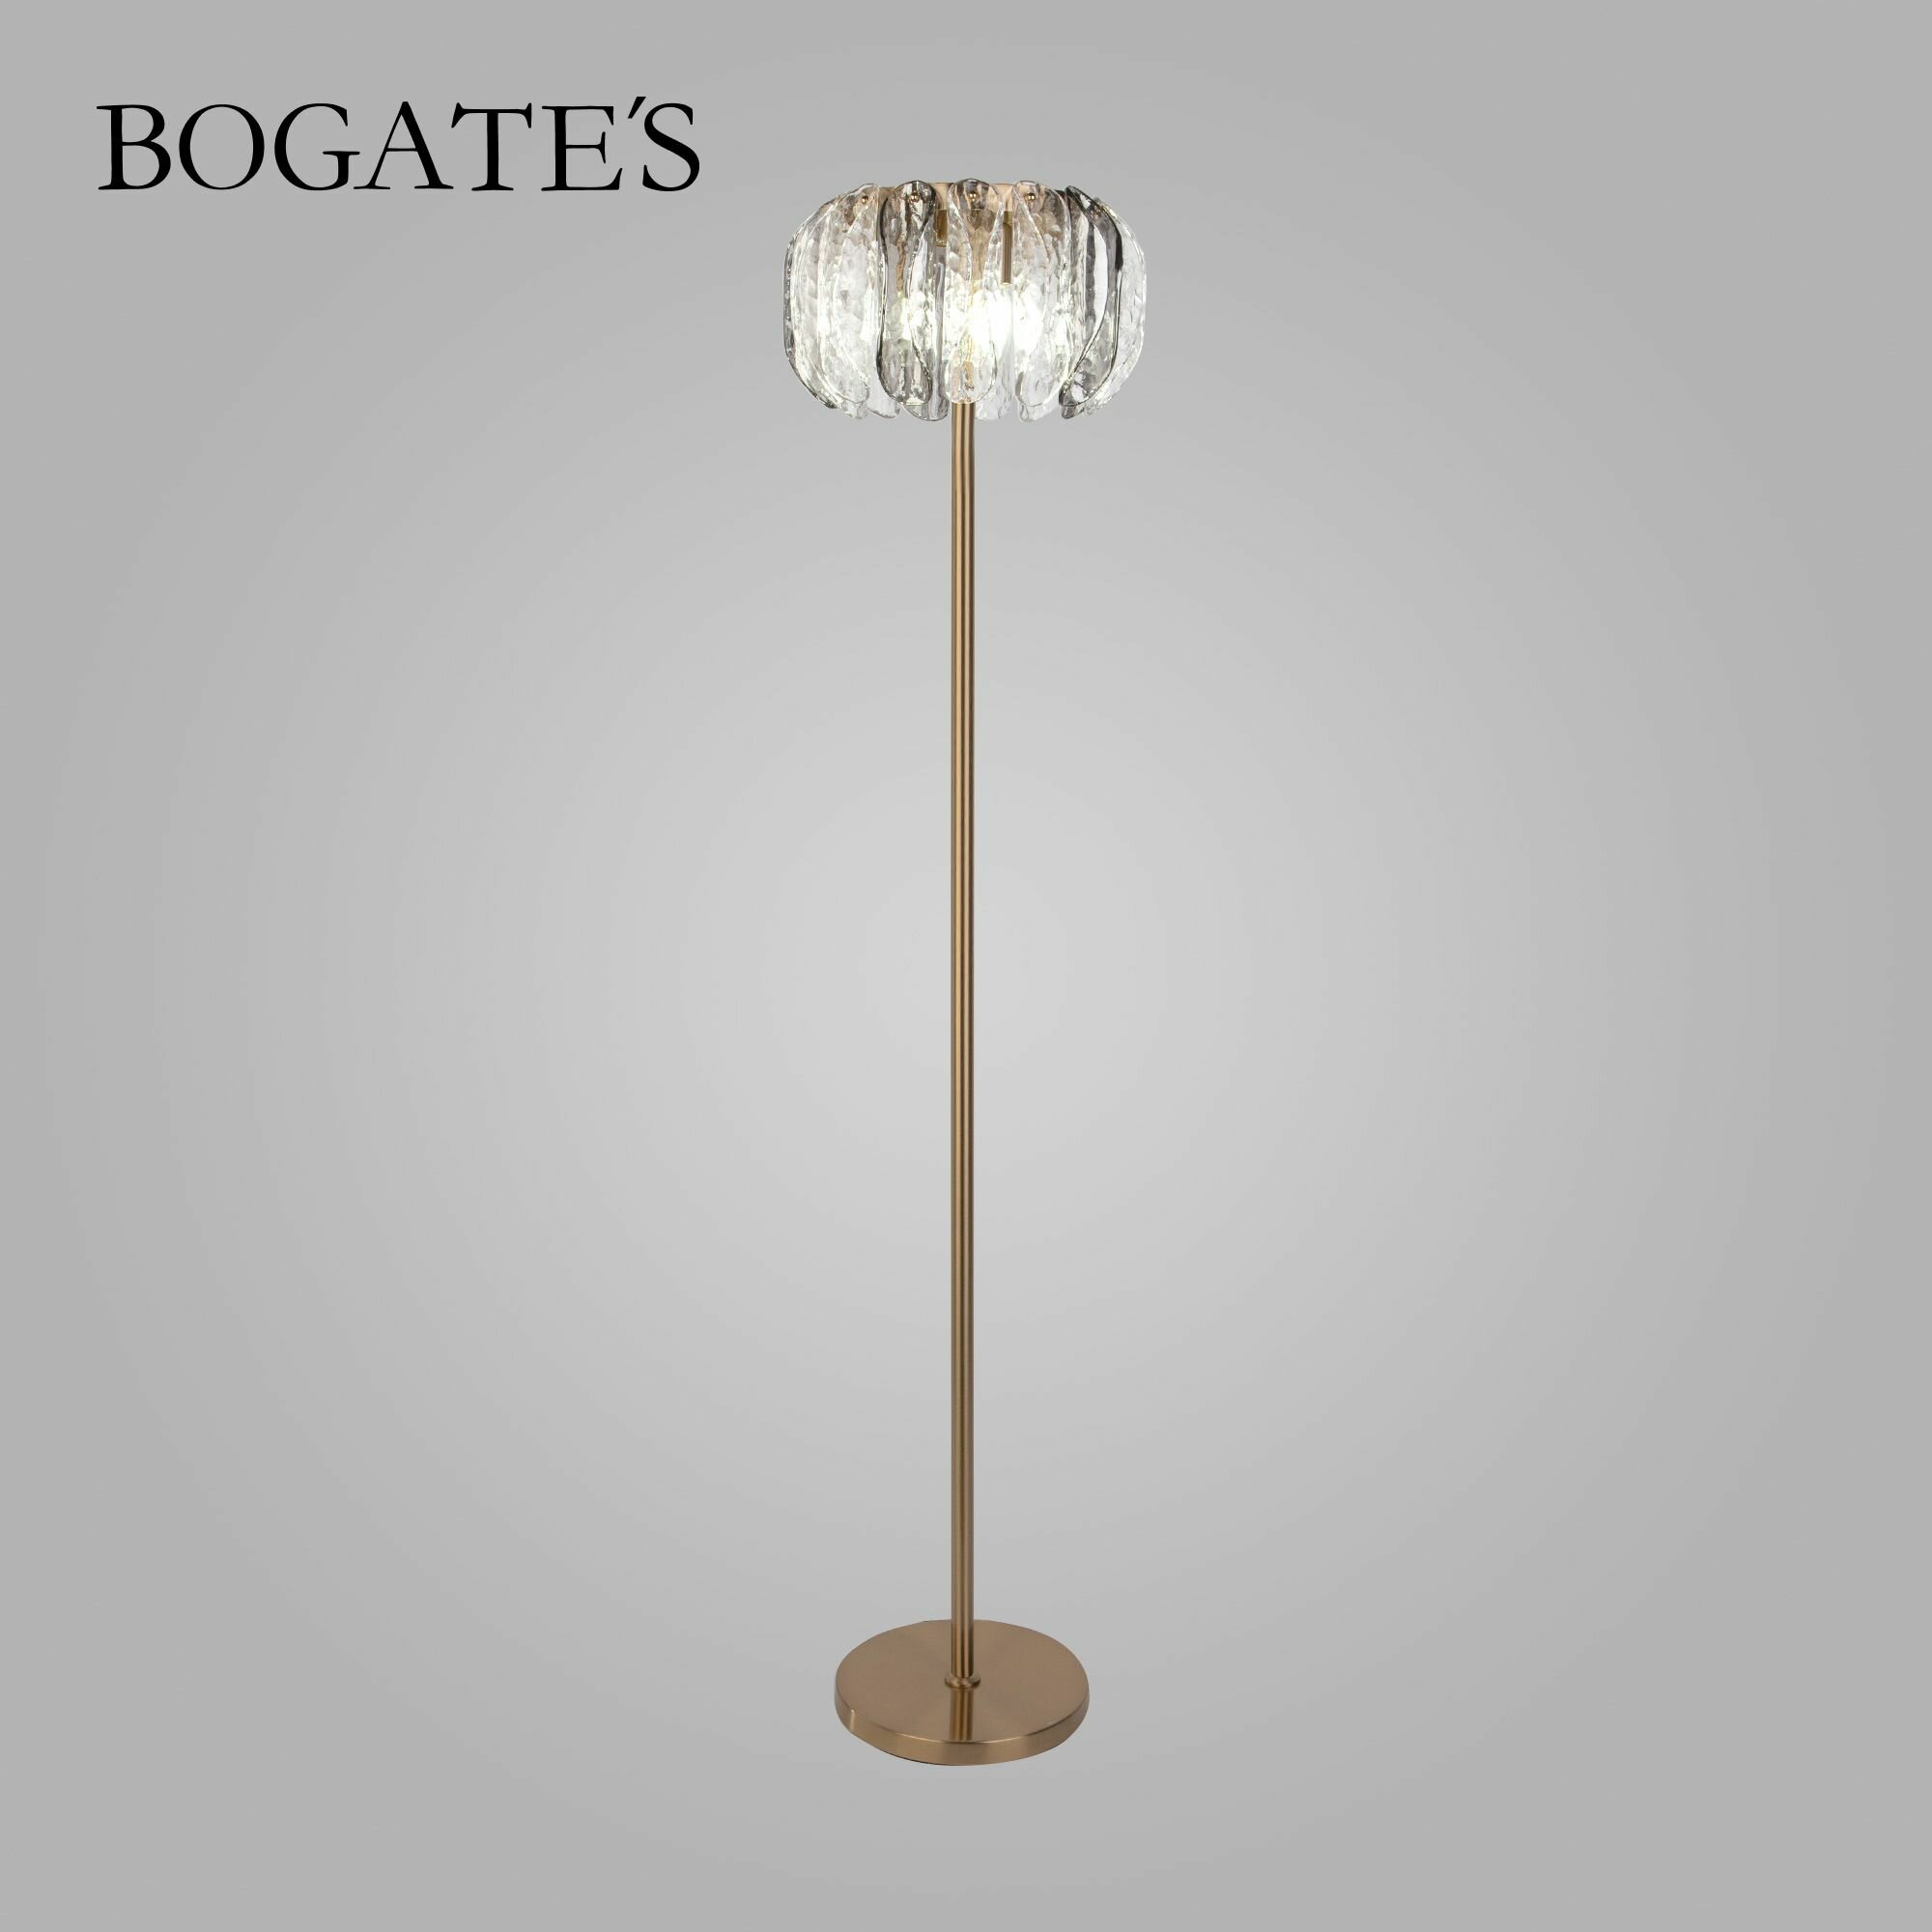 Торшер / Напольный светильник Bogate's Callas 01125/3 IP20